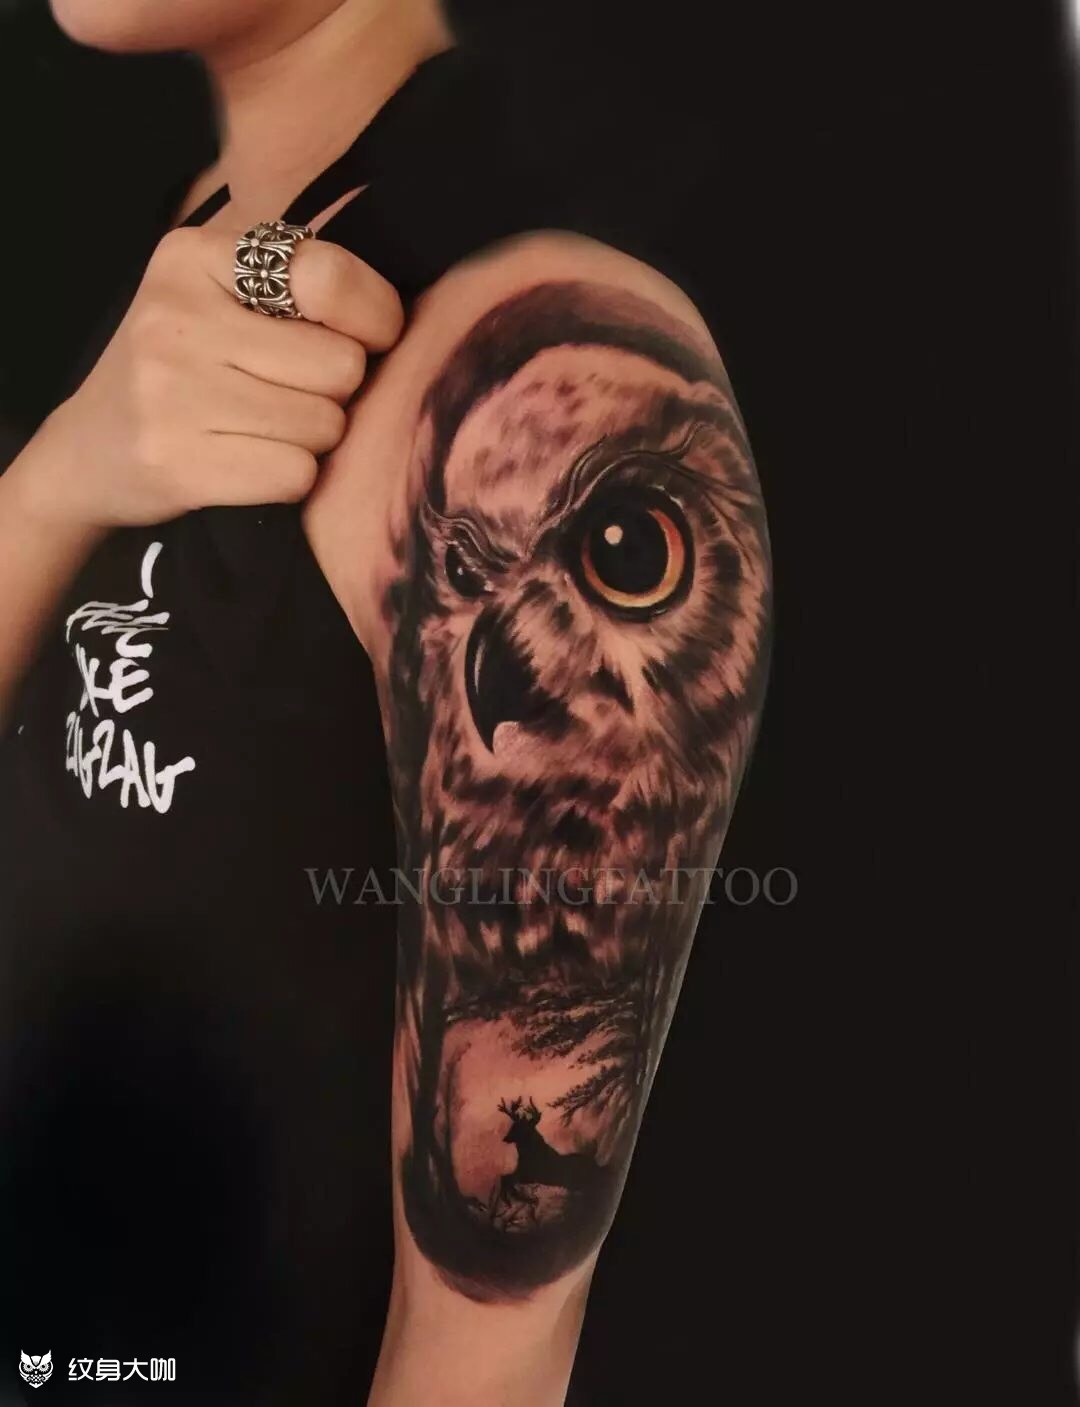 猫头鹰纹身图片胸前图片